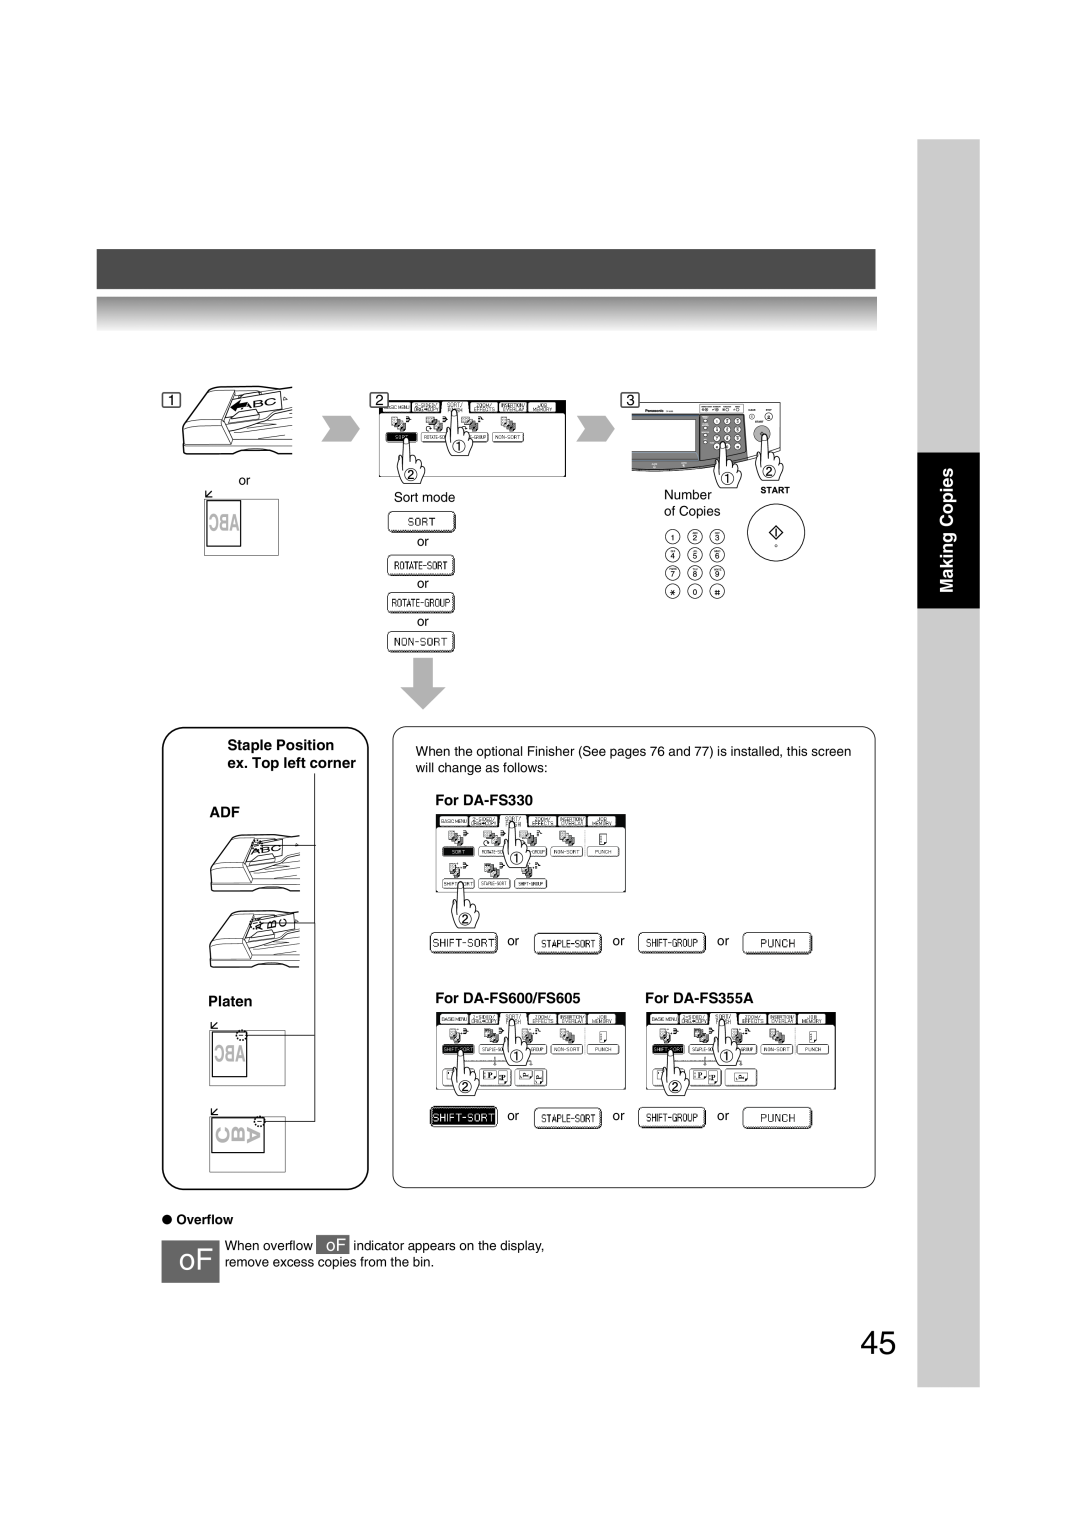 Panasonic 6020 Making Copies, Staple Position, ex. Top left corner, For DA-FS330, Platen, For DA-FS600/FS605, Sort mode 